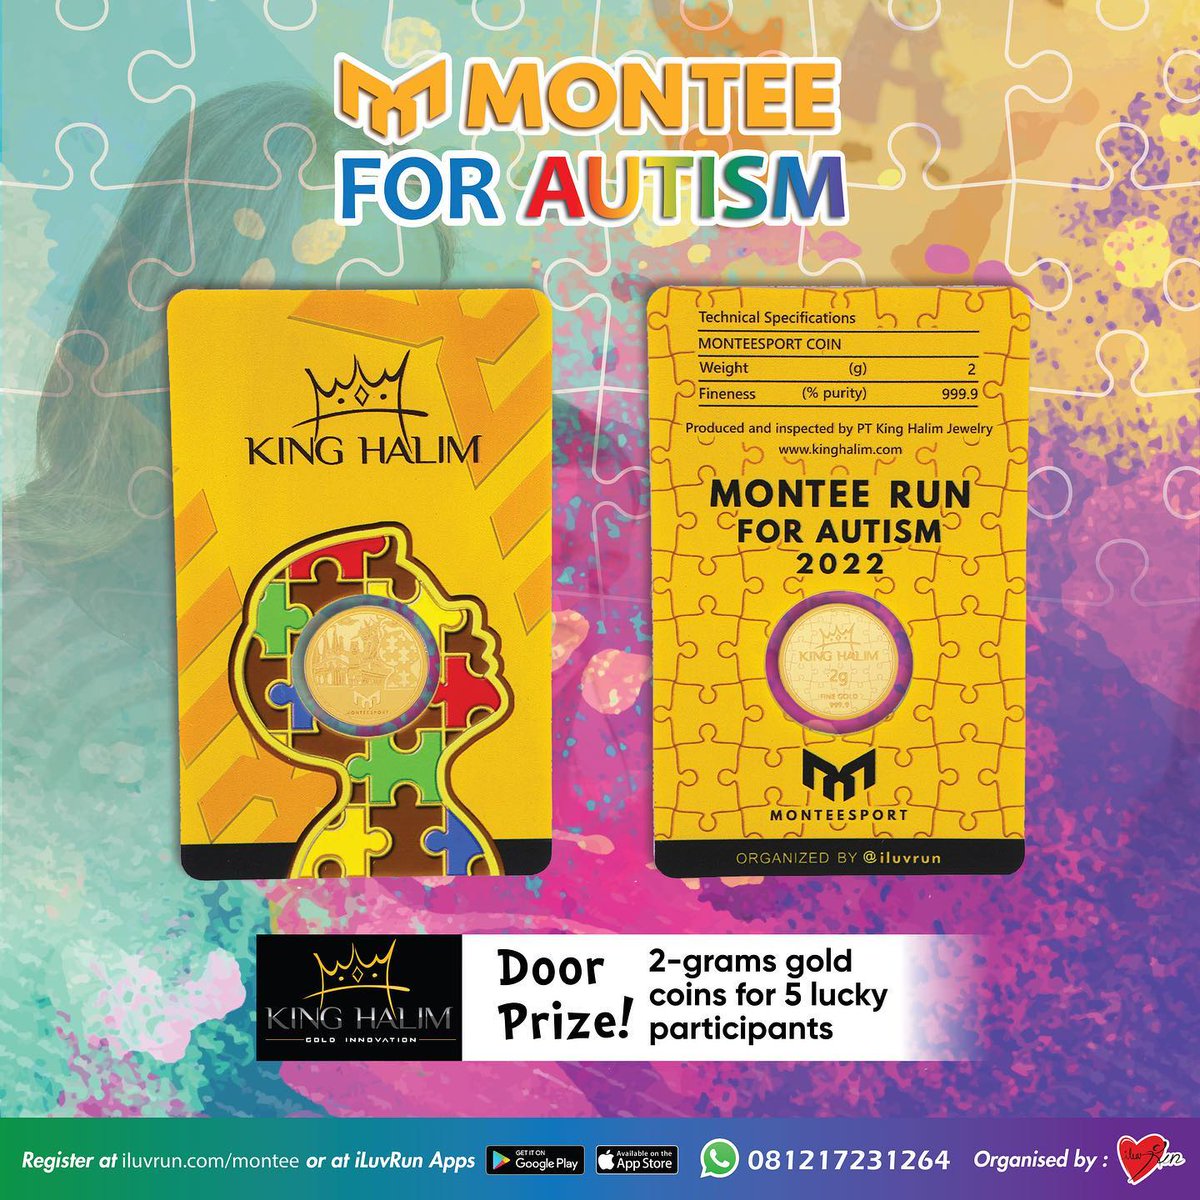 Doorprize Montee Run for Autism 2022